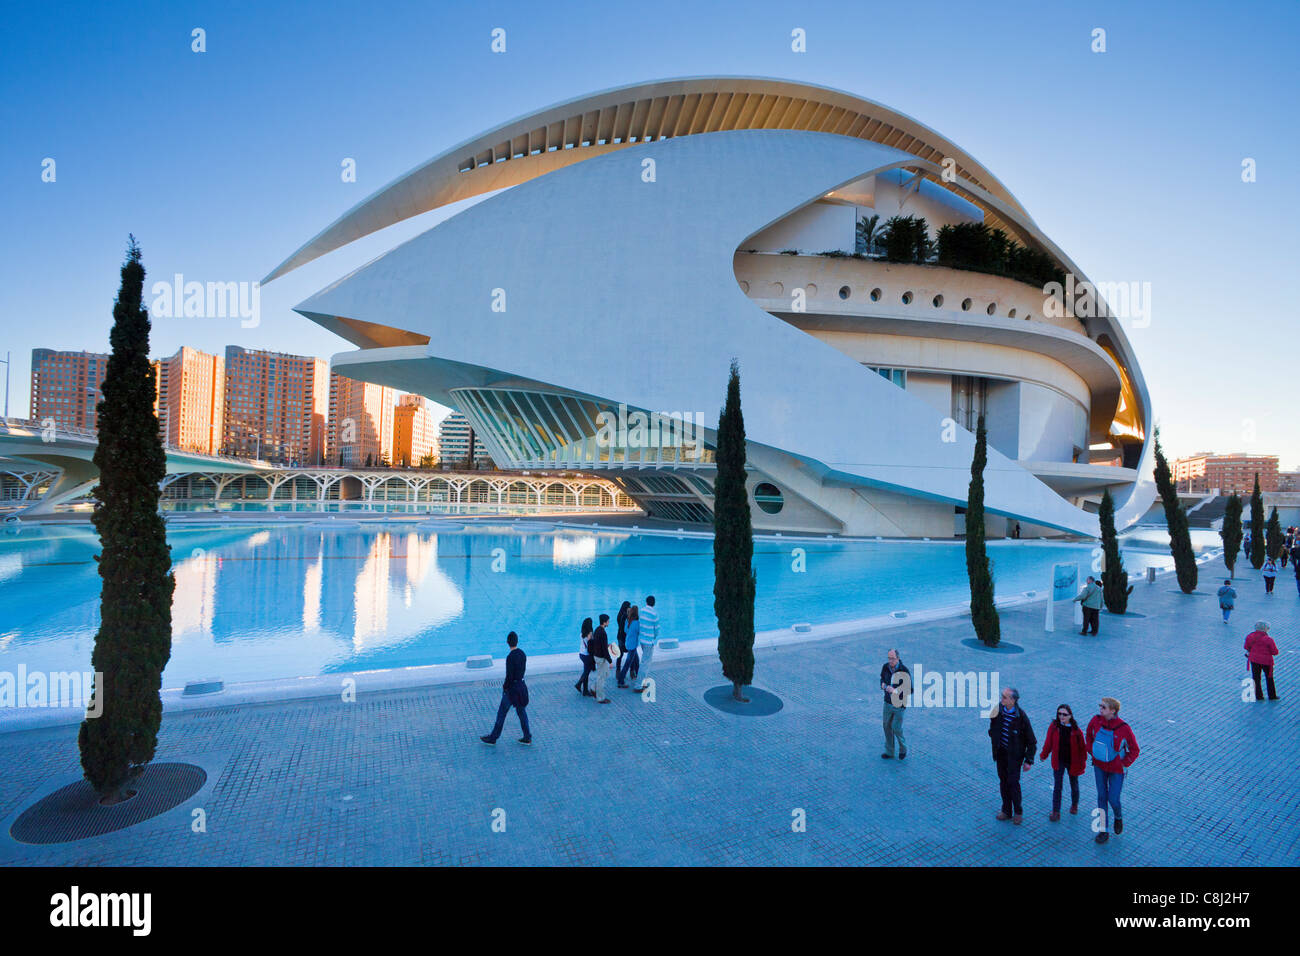 L'Espagne, l'Europe, Valence, Cité des Arts et des sciences, Calatrava, architecture, Moderne, Palais des Arts, de l'eau Banque D'Images